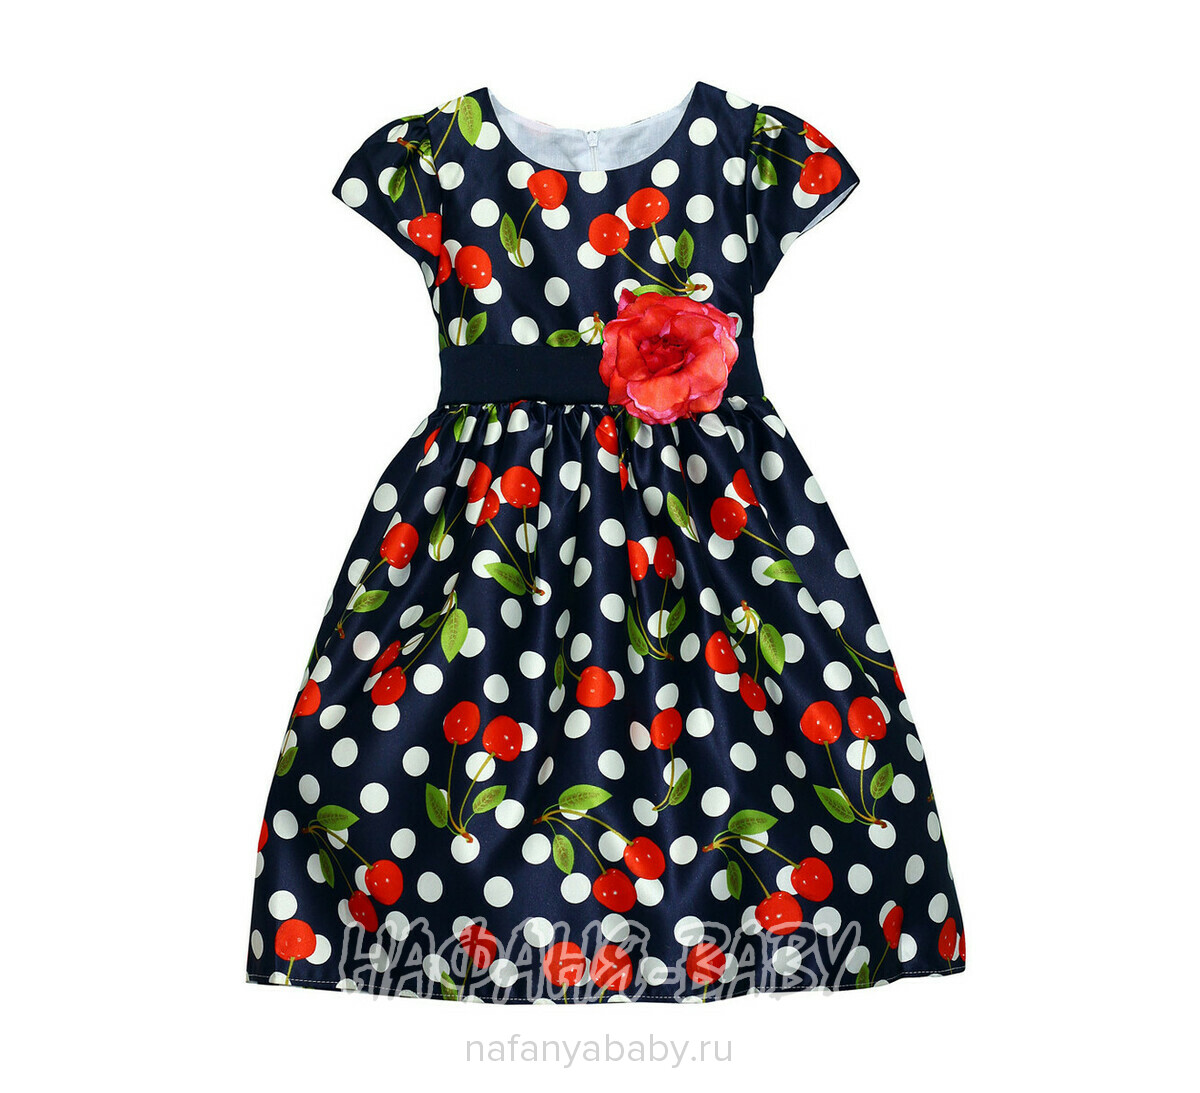 Детское платье YOU YA, купить в интернет магазине Нафаня. арт: 1511.